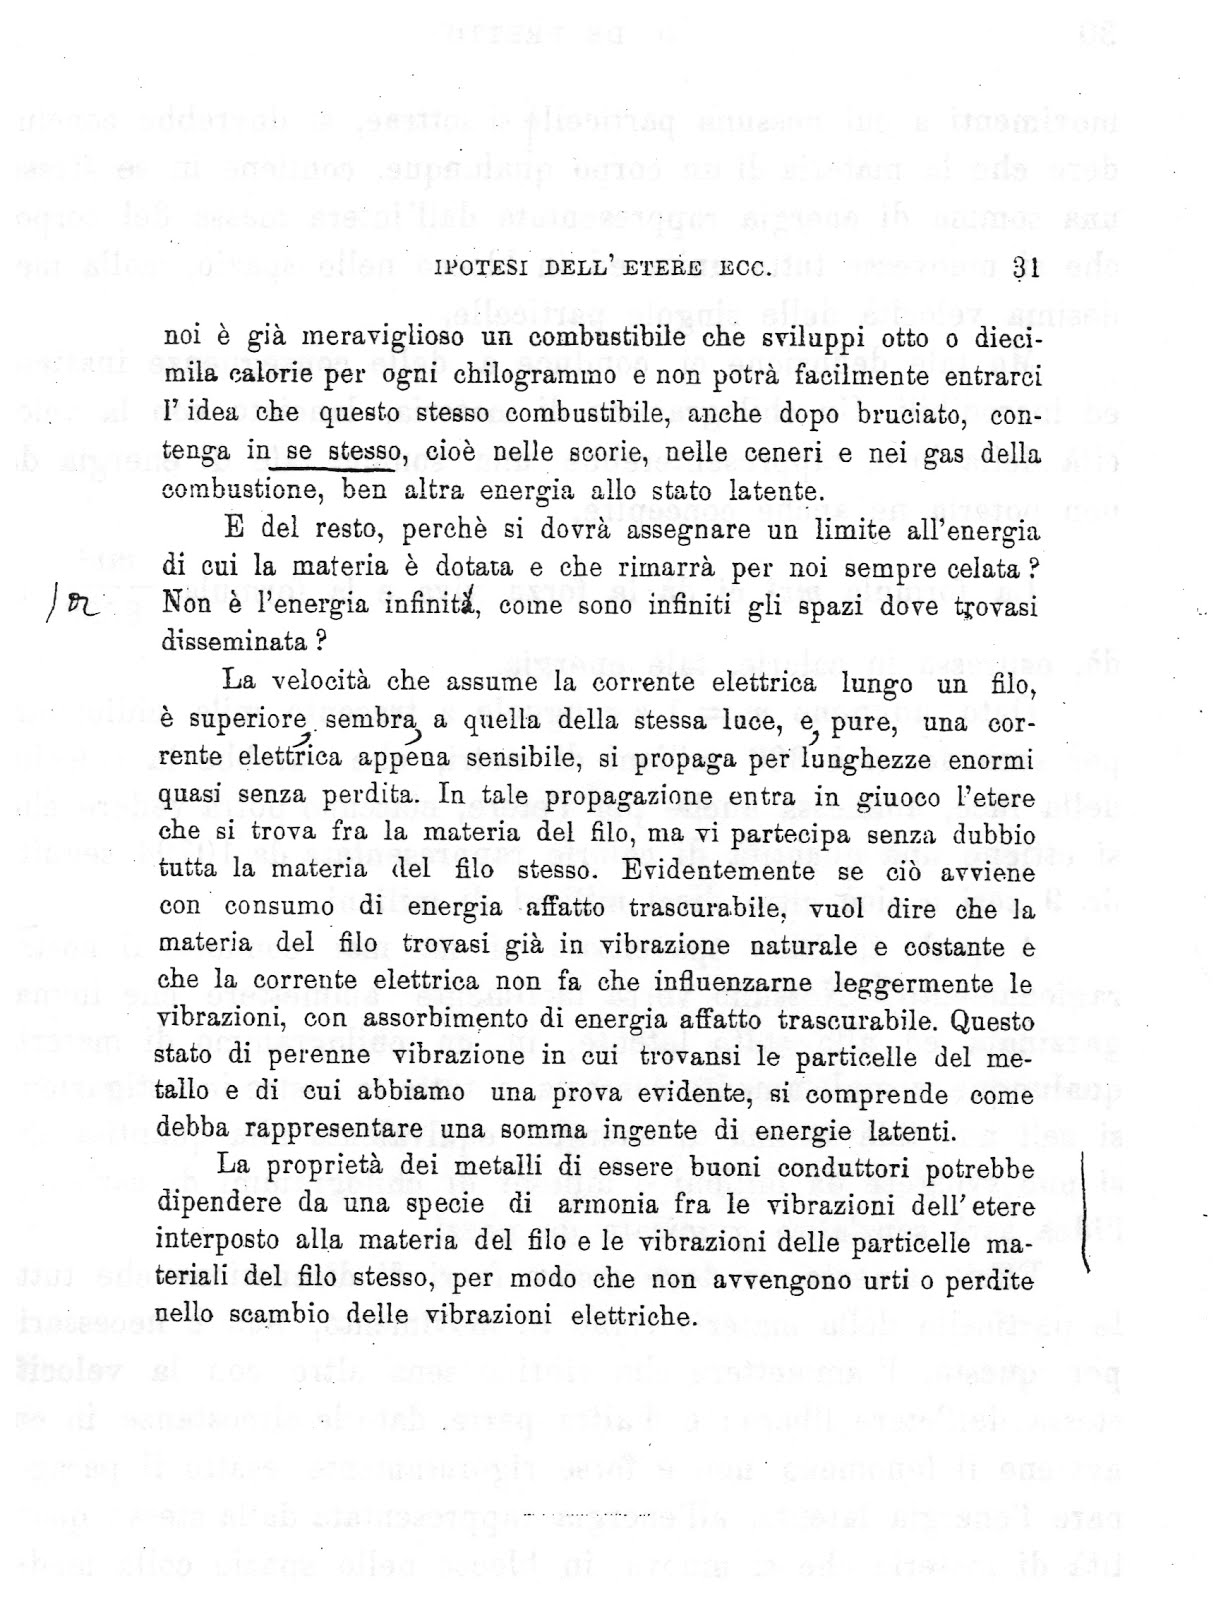 Pag. 31